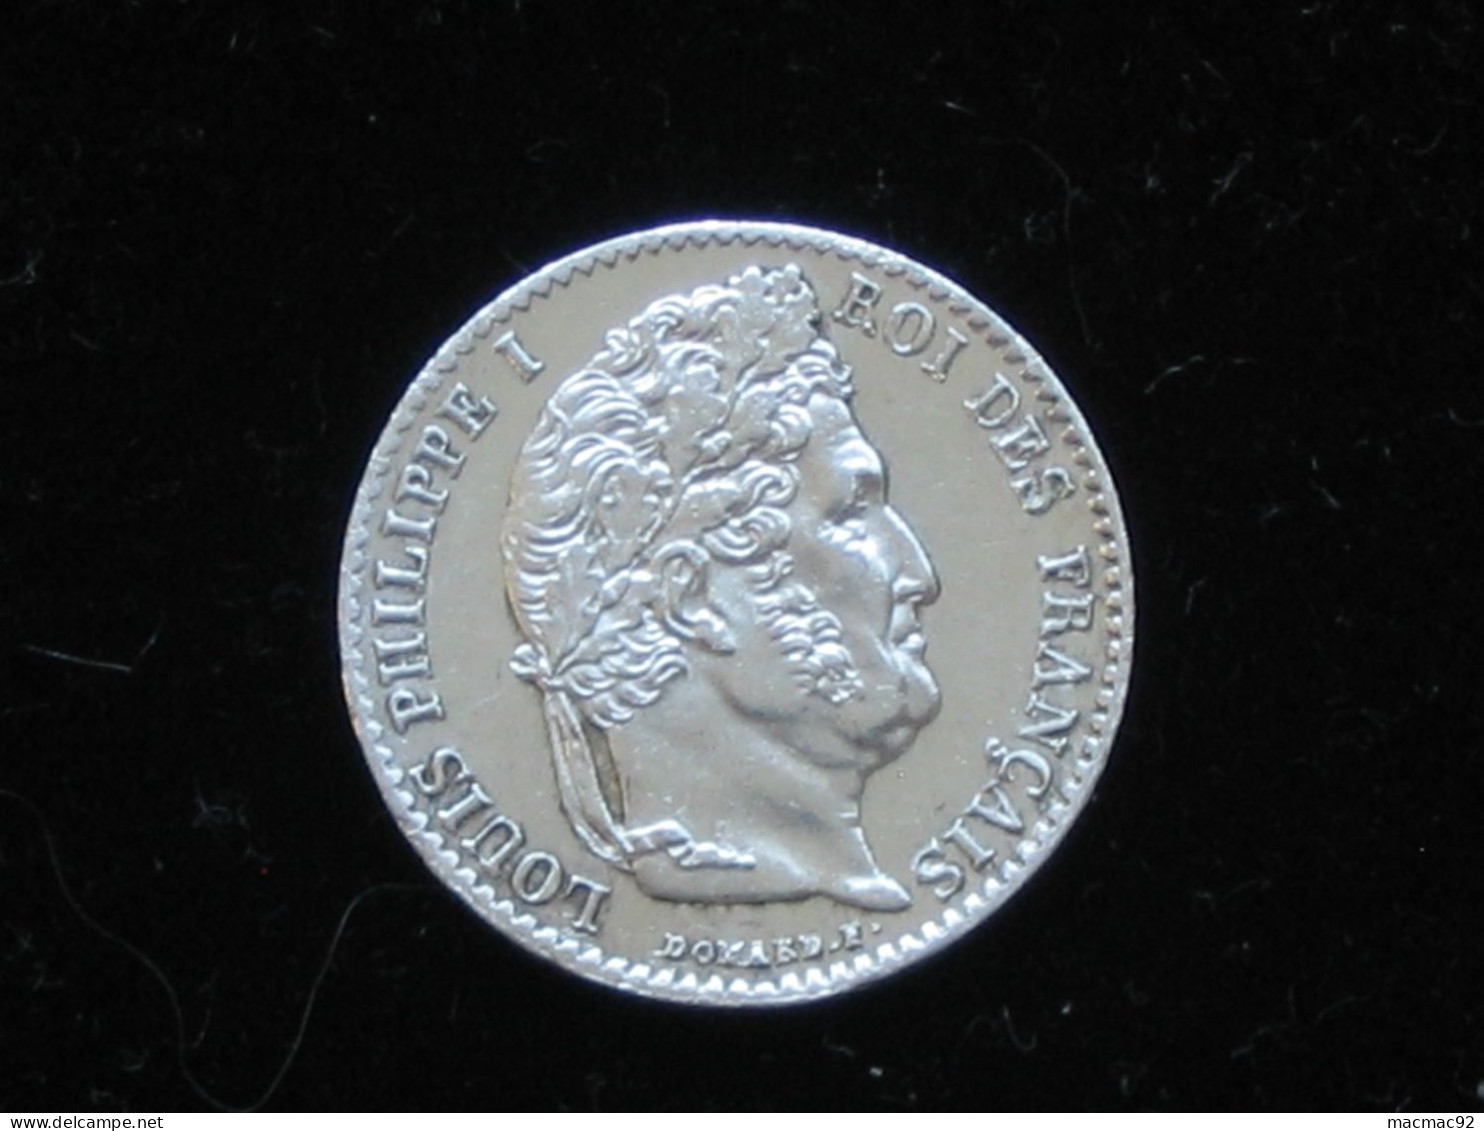 MAGNIFIQUE 1/4 De Franc 1836 A - Louis Philippe Roi Des Français    *****  EN ACHAT IMMEDIAT  ***** - 1/4 Franc